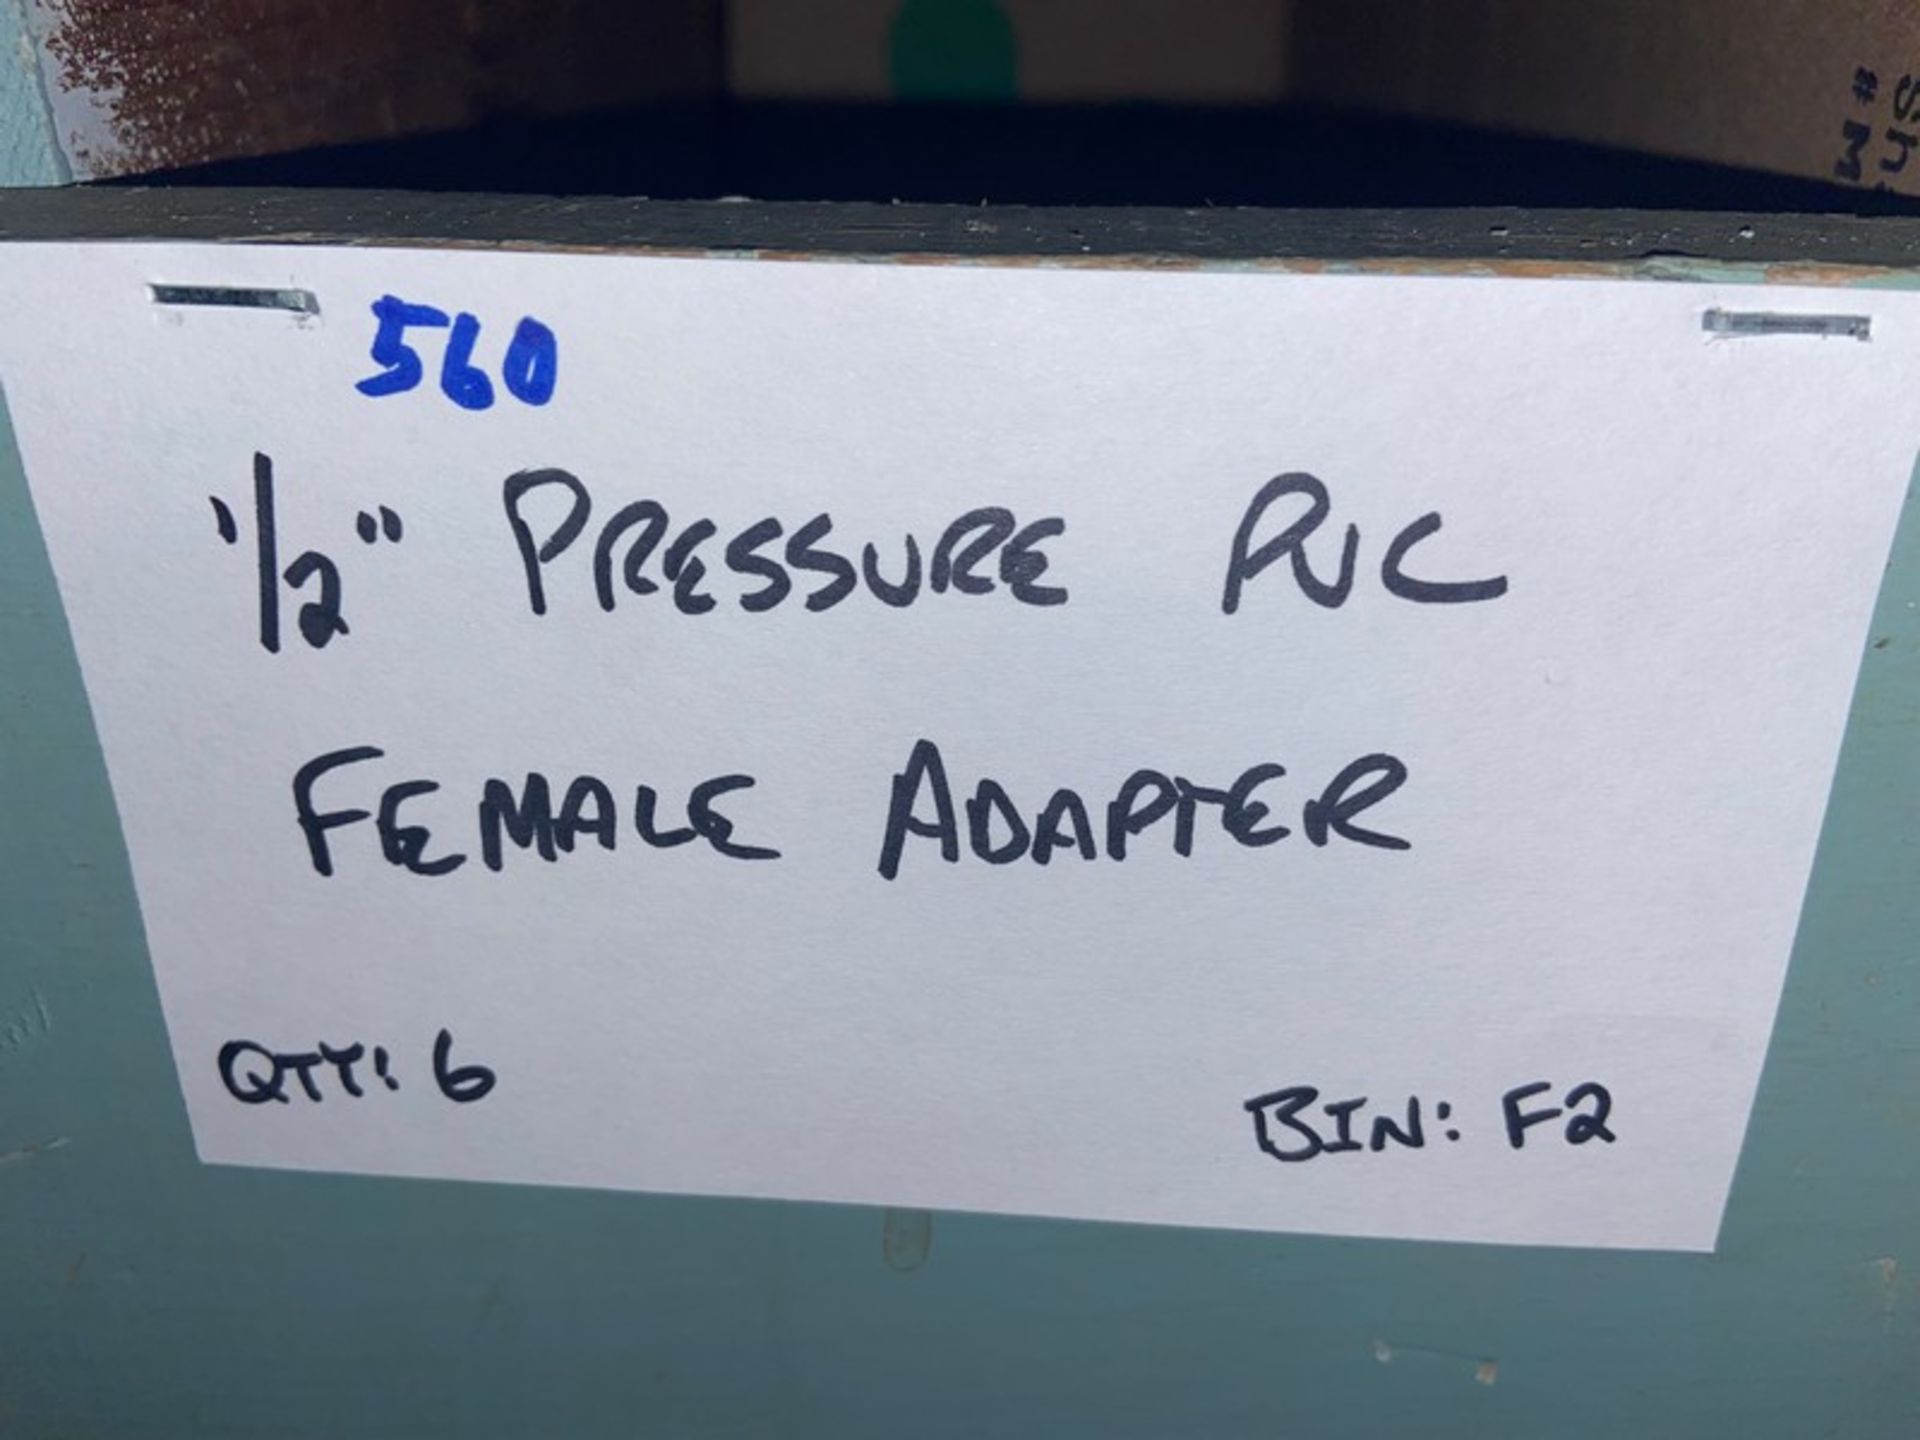 (1) 1/2" Pressure PVC Male Adapter (Bin: F2); (6) 1/2" Pressure PVC Female Adapter (LOCATED IN - Image 11 of 11